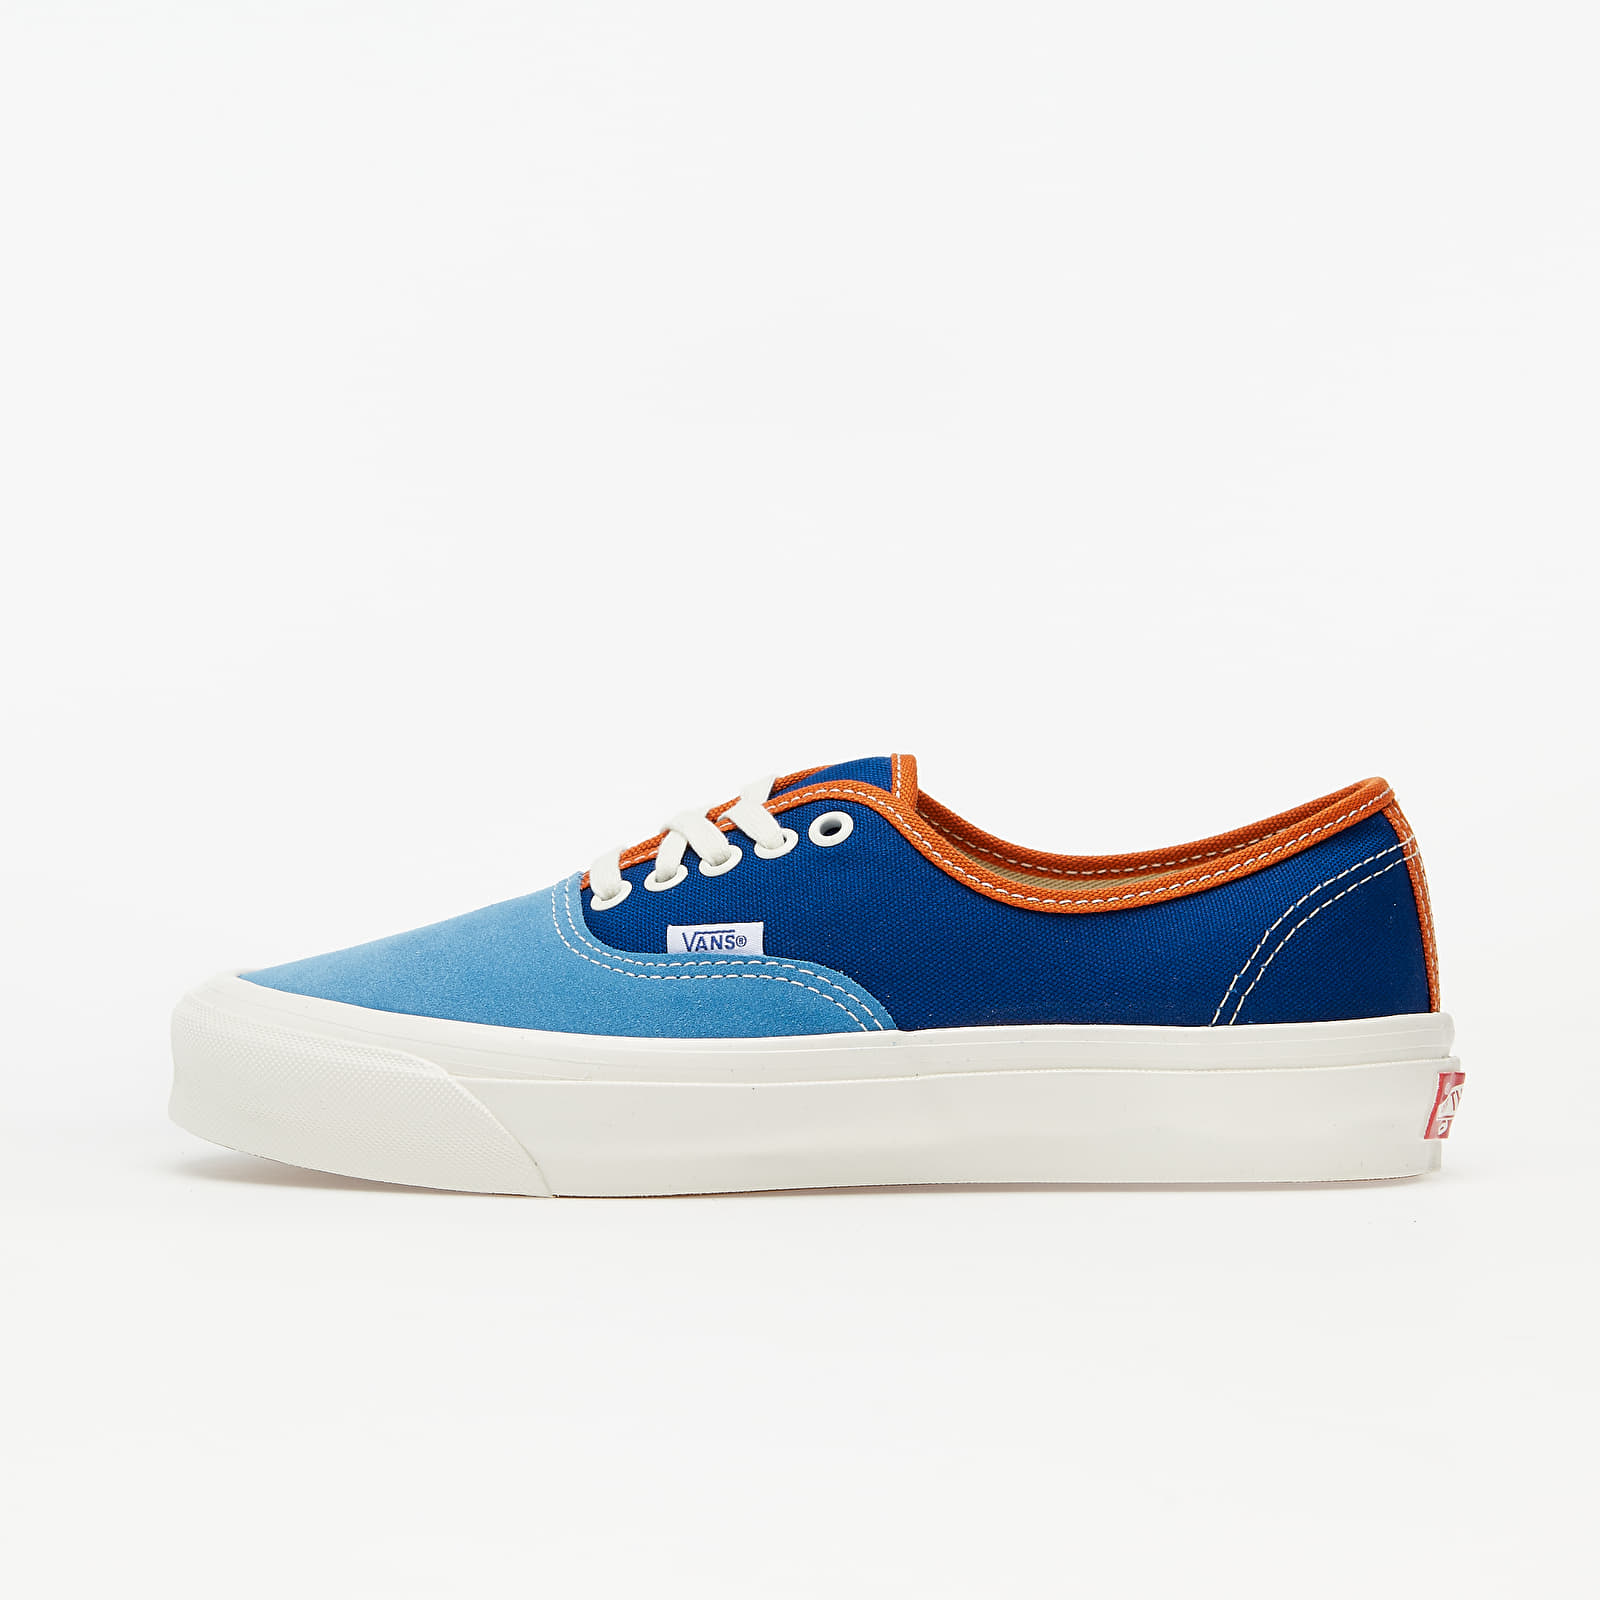 Herren Sneaker und Schuhe Vans Vault OG Authentic LX (Suede/ Canvas) Blue